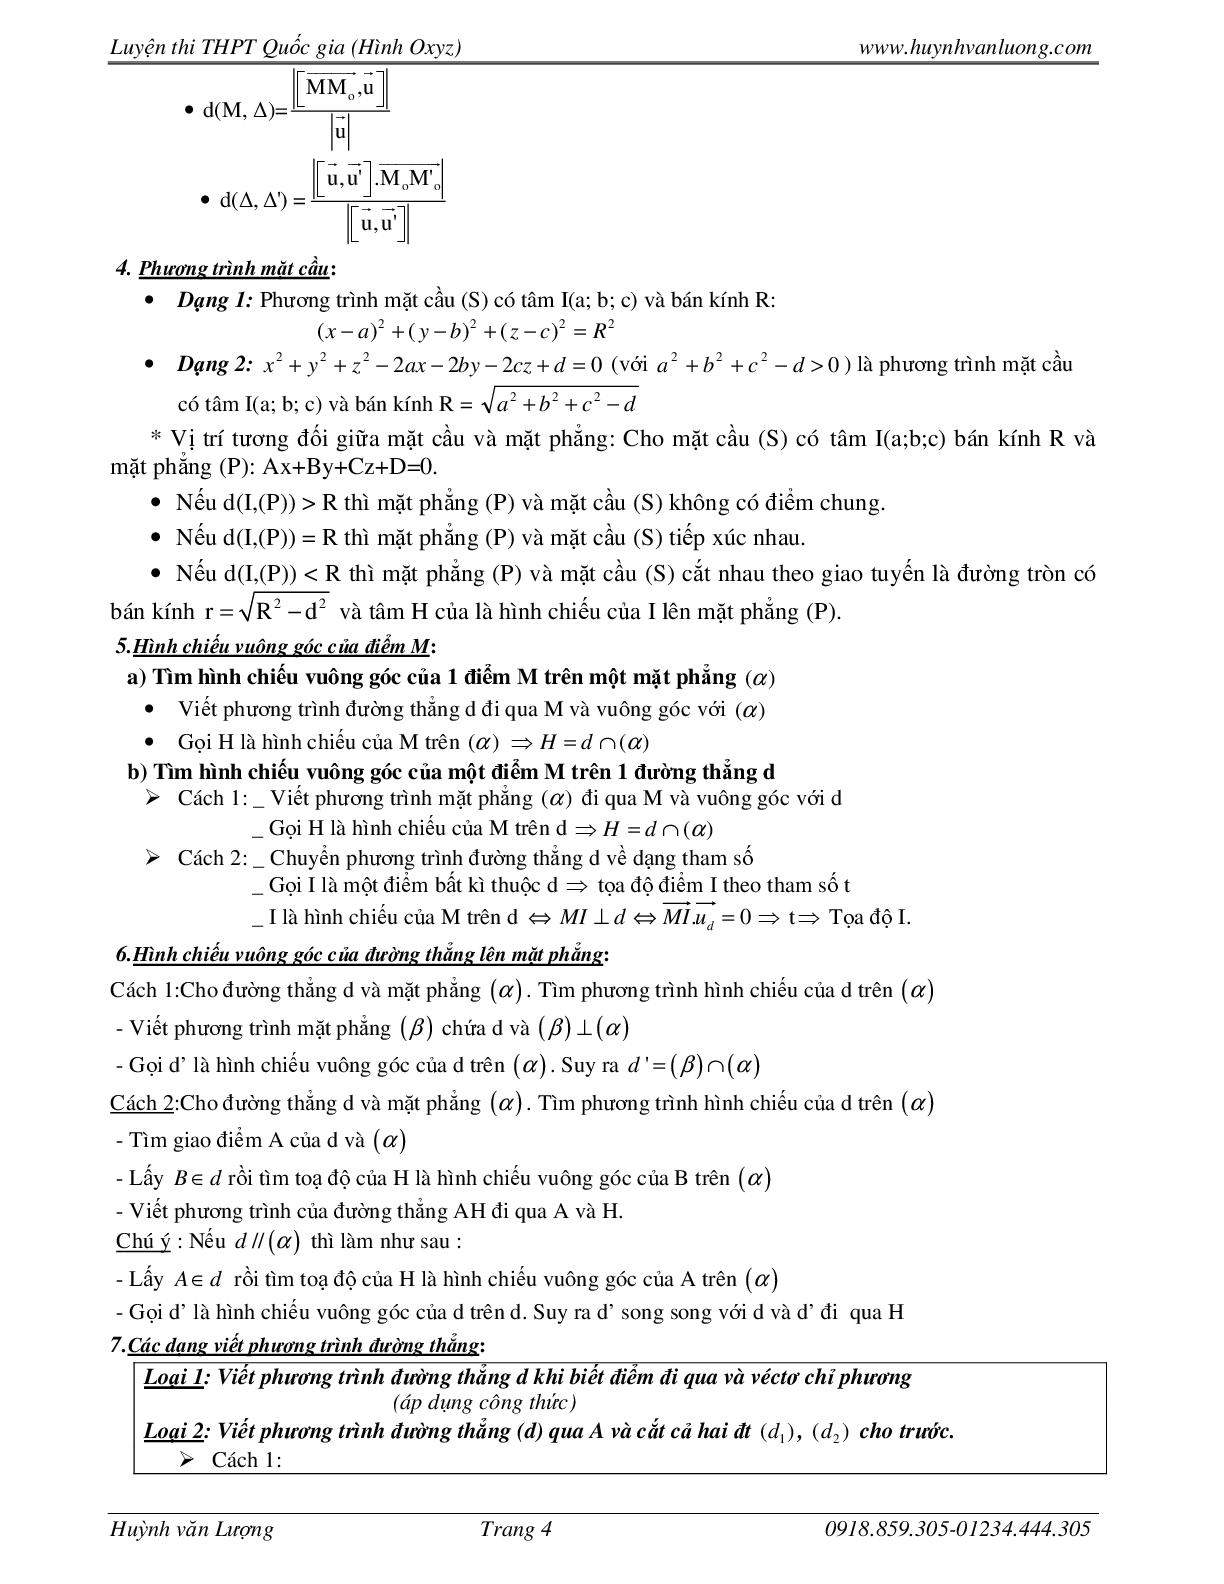 236 Bài tập trắc nghiệm hình học Oxyz môn Toán lớp 12 năm 2023 (trang 4)